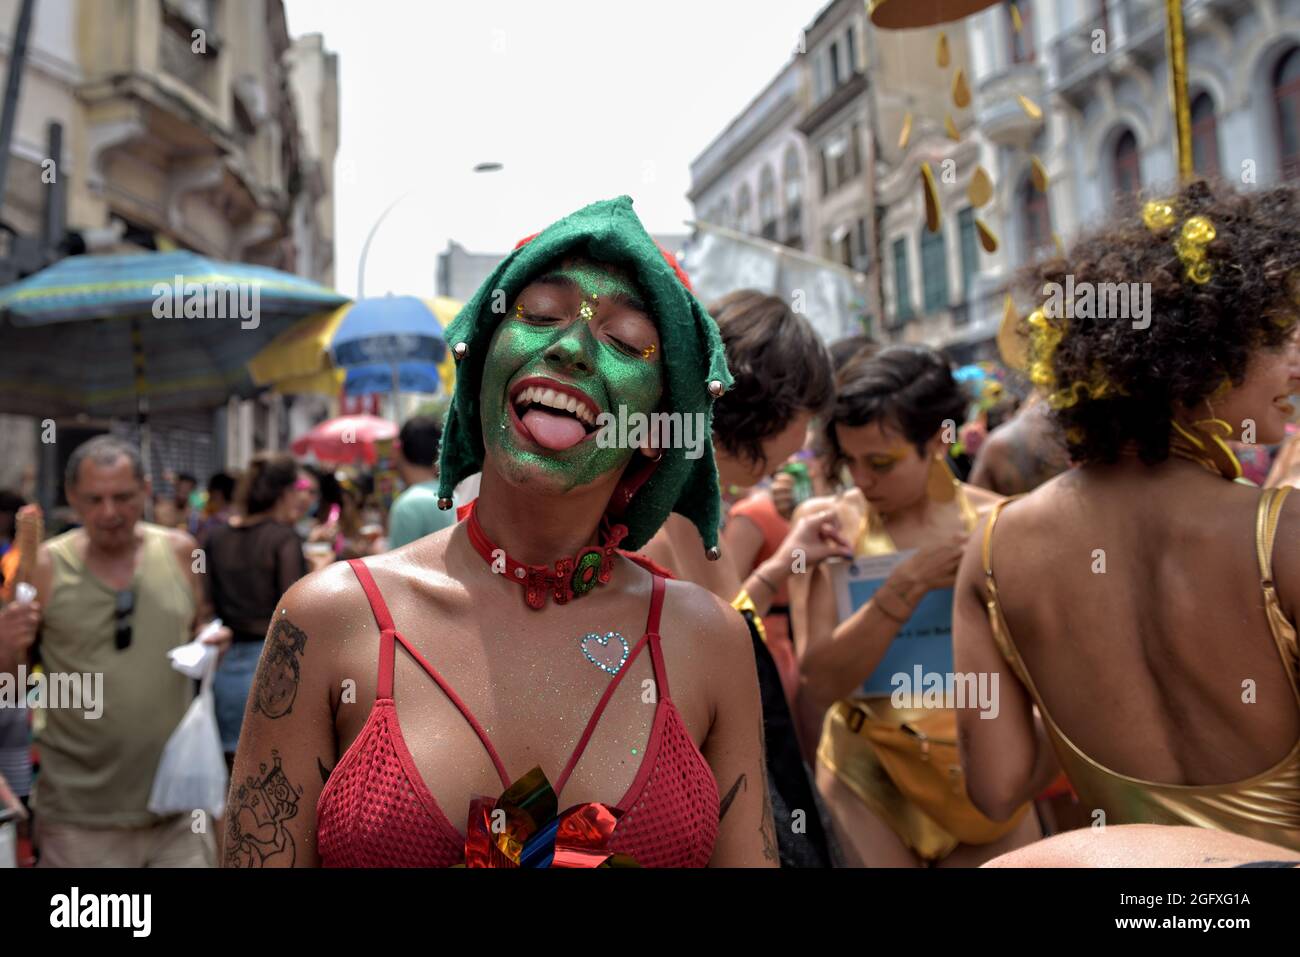 Gli occhi verdi della donna durante il carnevale Foto stock - Alamy